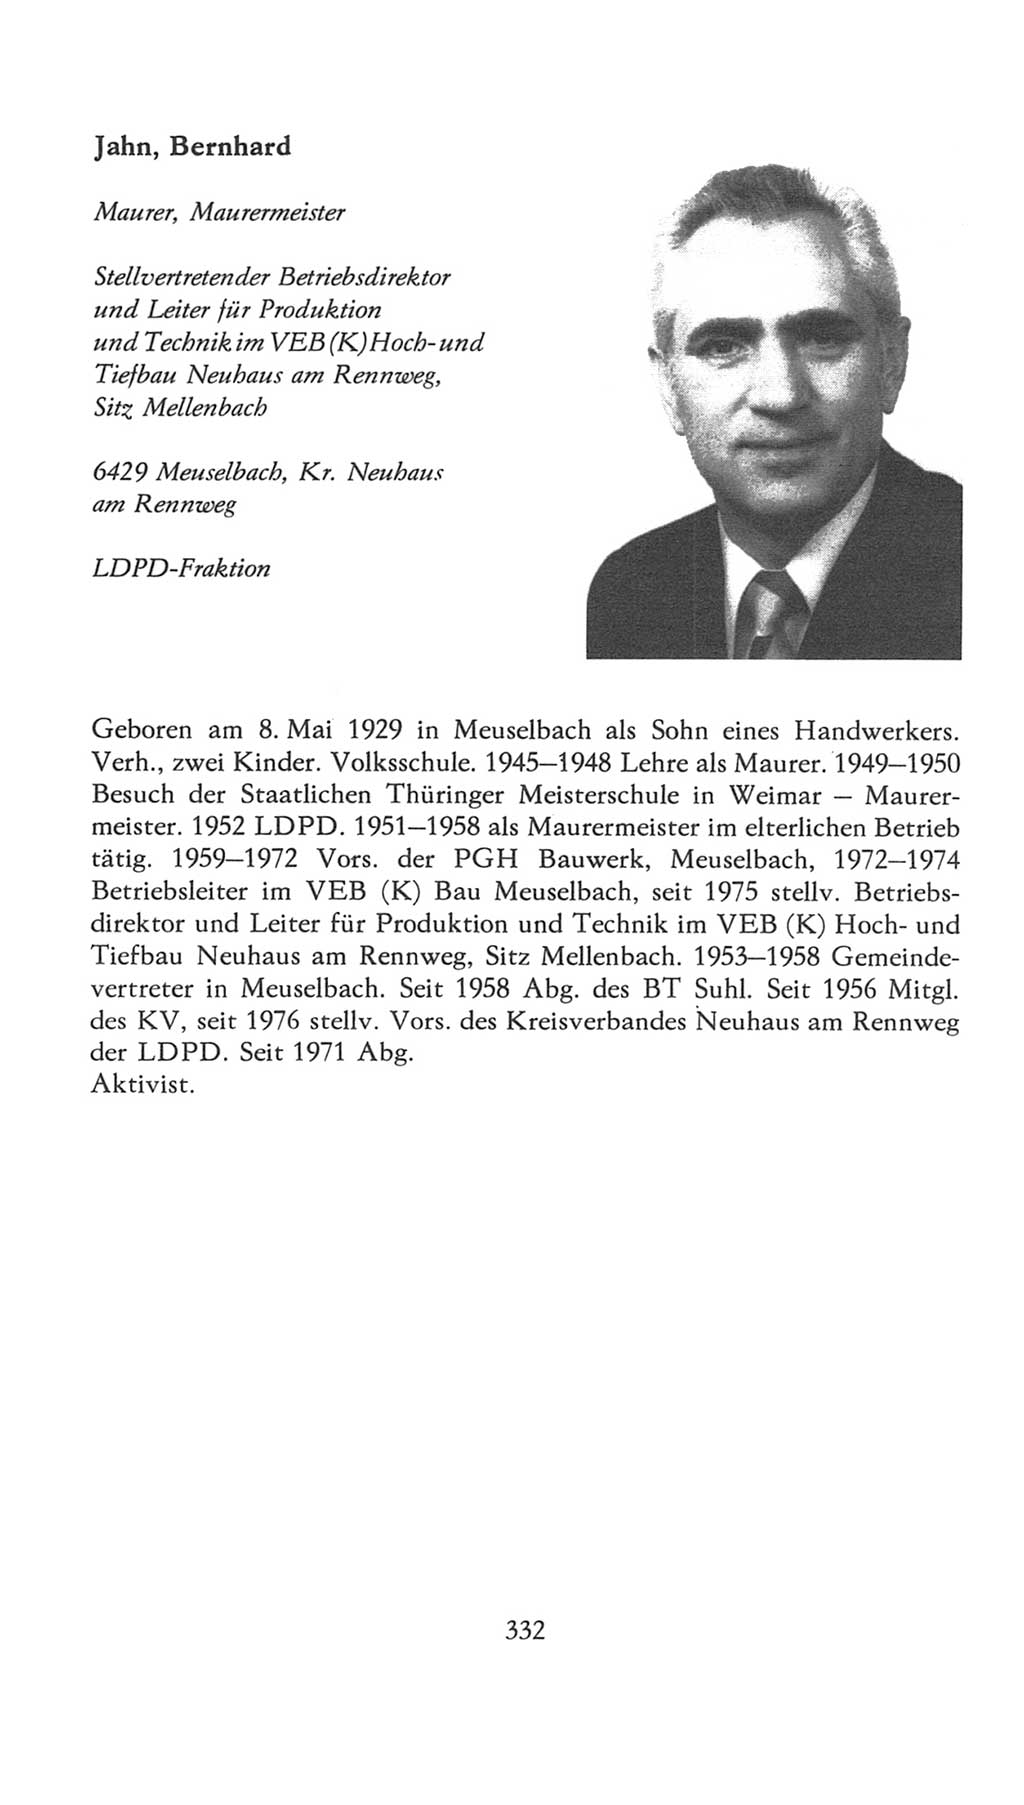 Volkskammer (VK) der Deutschen Demokratischen Republik (DDR), 7. Wahlperiode 1976-1981, Seite 332 (VK. DDR 7. WP. 1976-1981, S. 332)